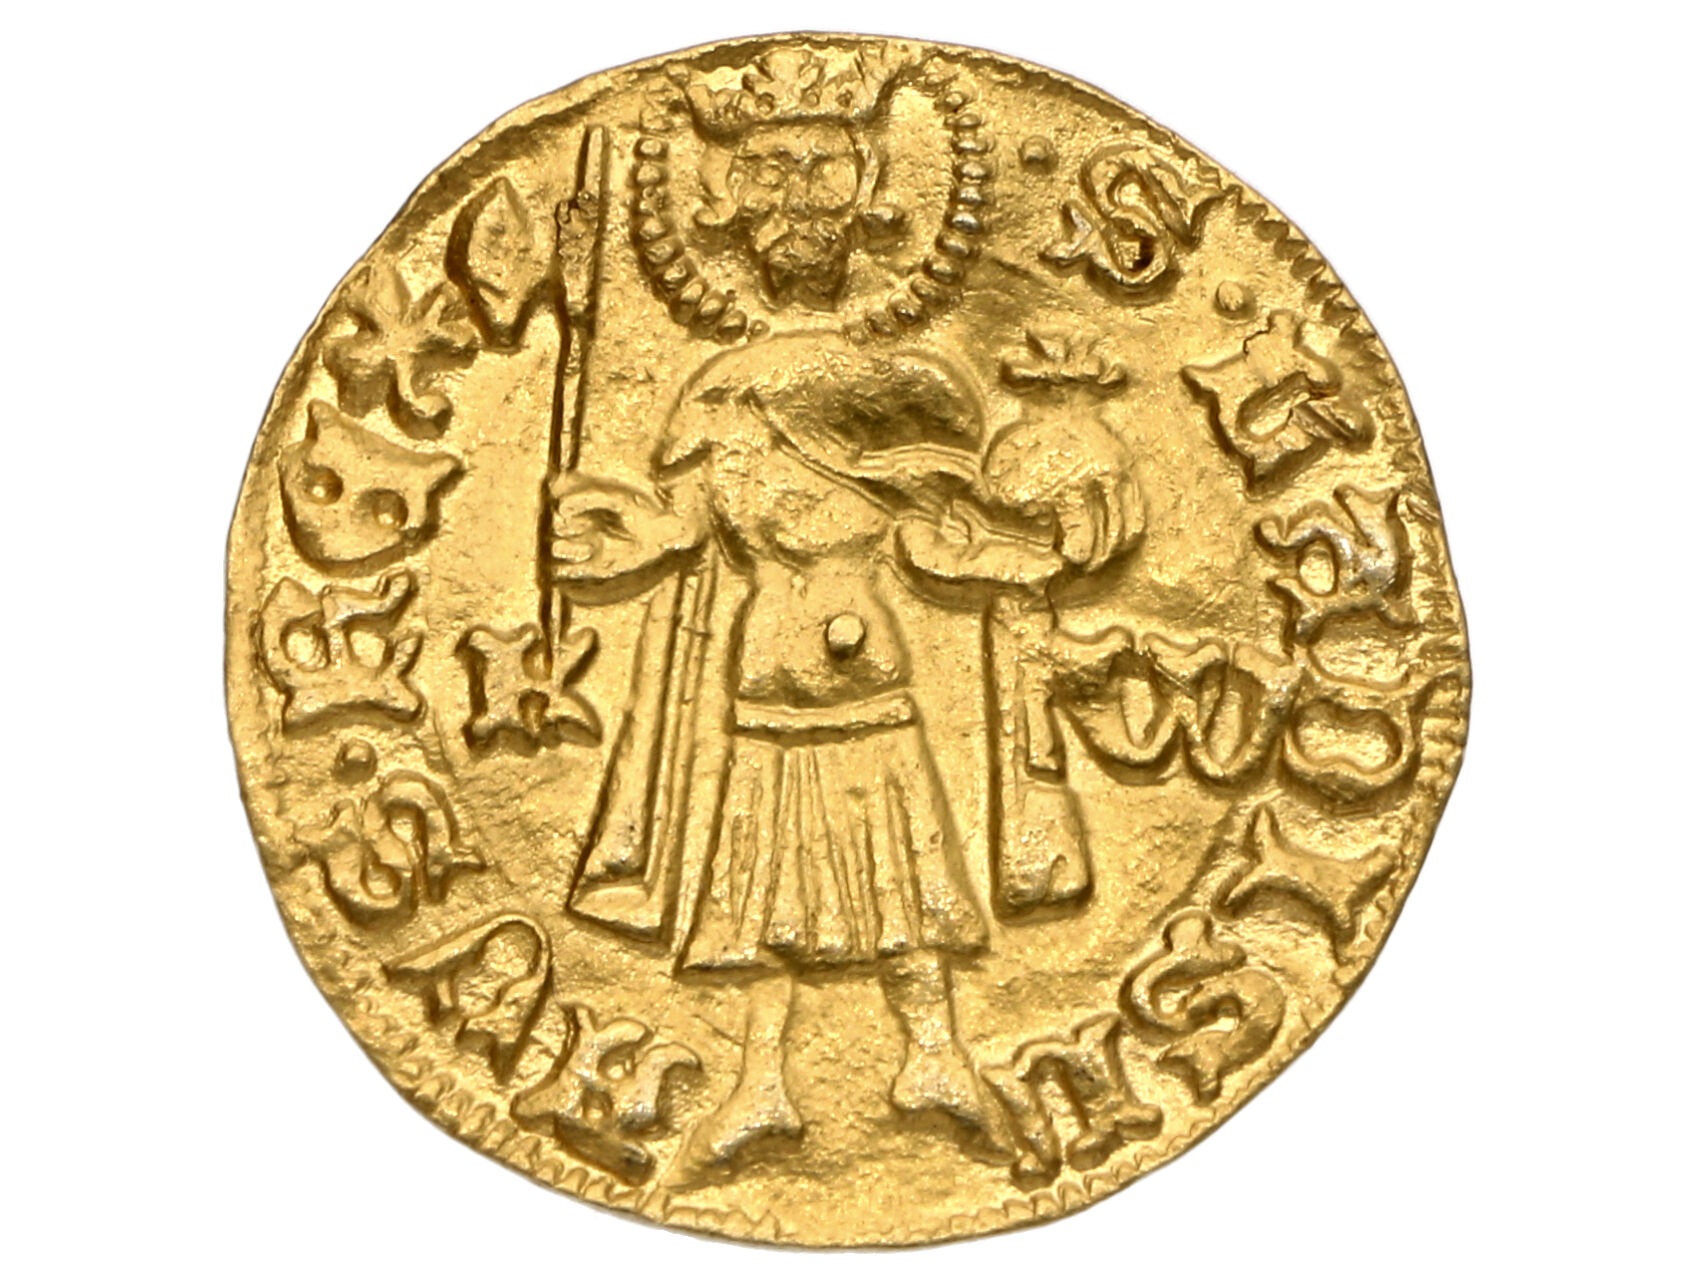 Zikmund Lucemburský 1387-1437 - Dukát b.l., minc. zn. K - W, váha 3.59 g